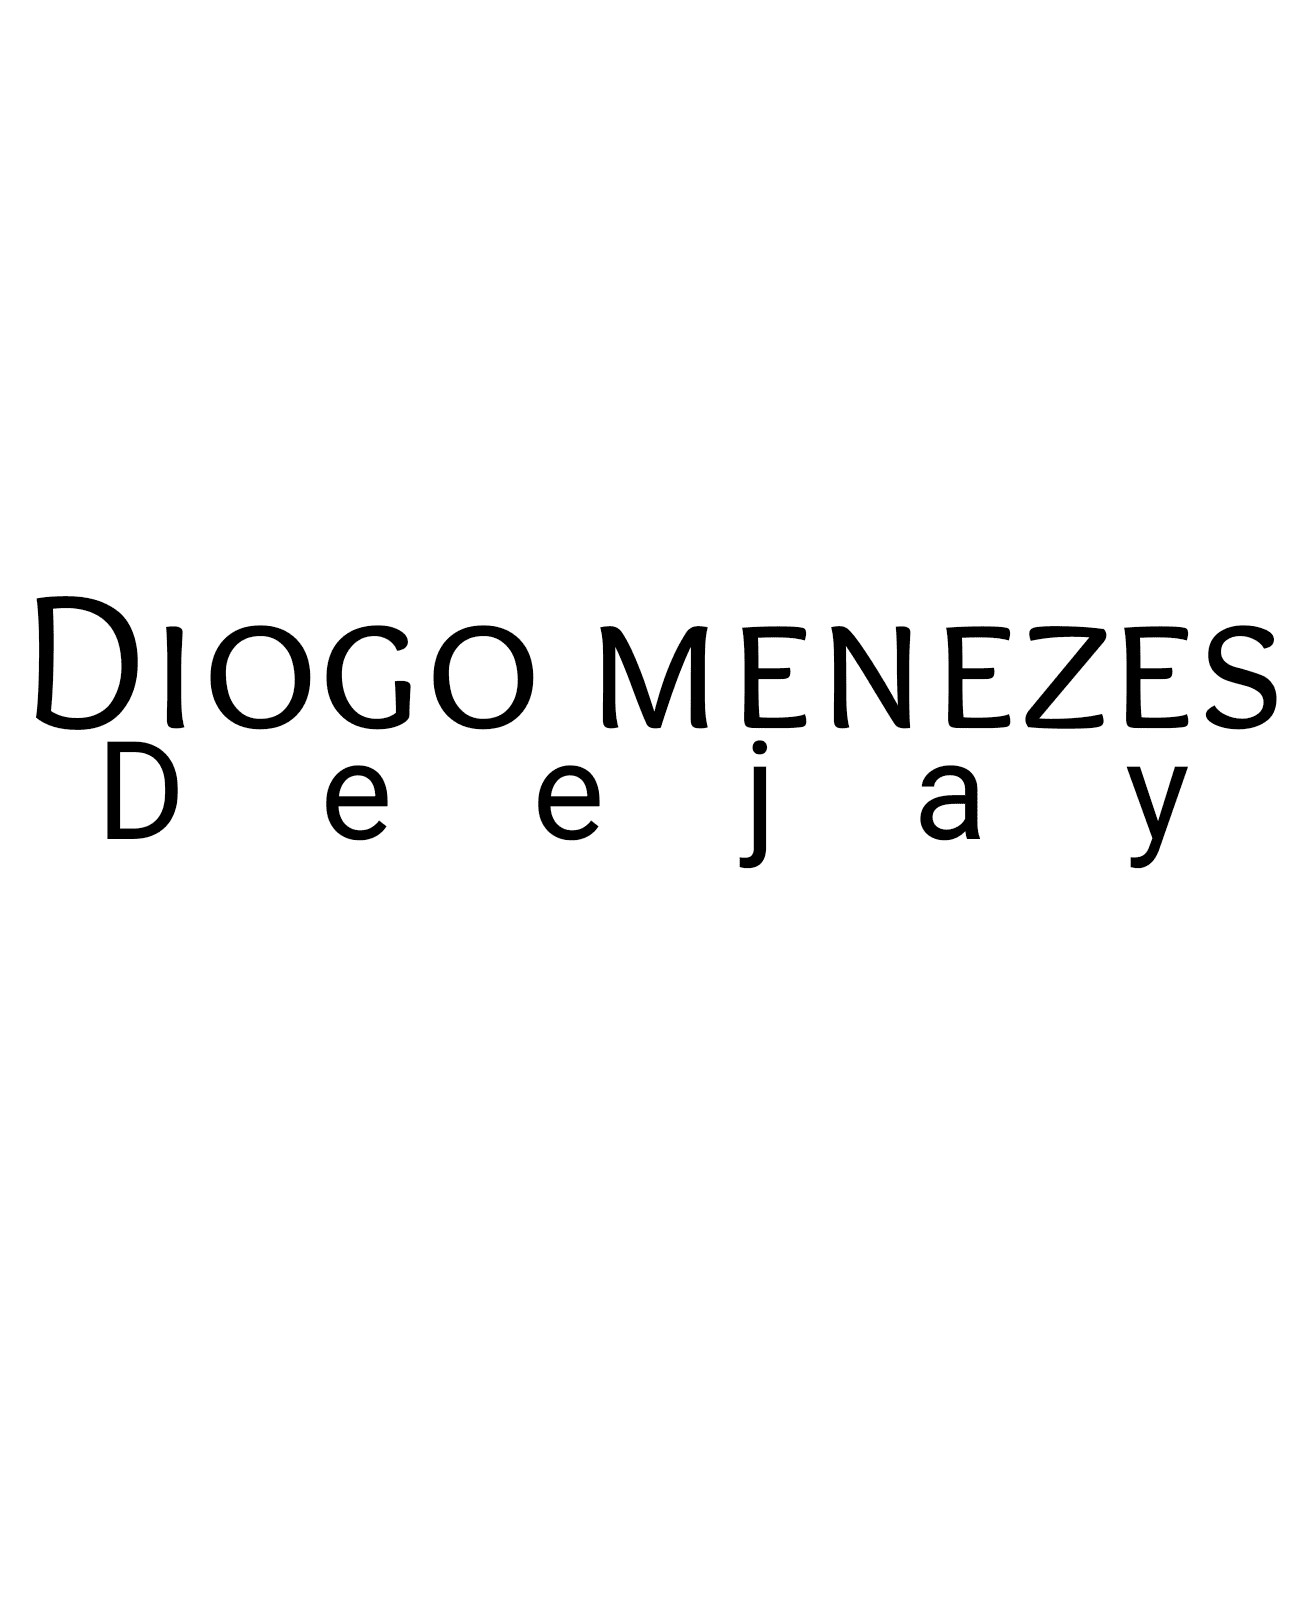 Diogo Menezes Deejay